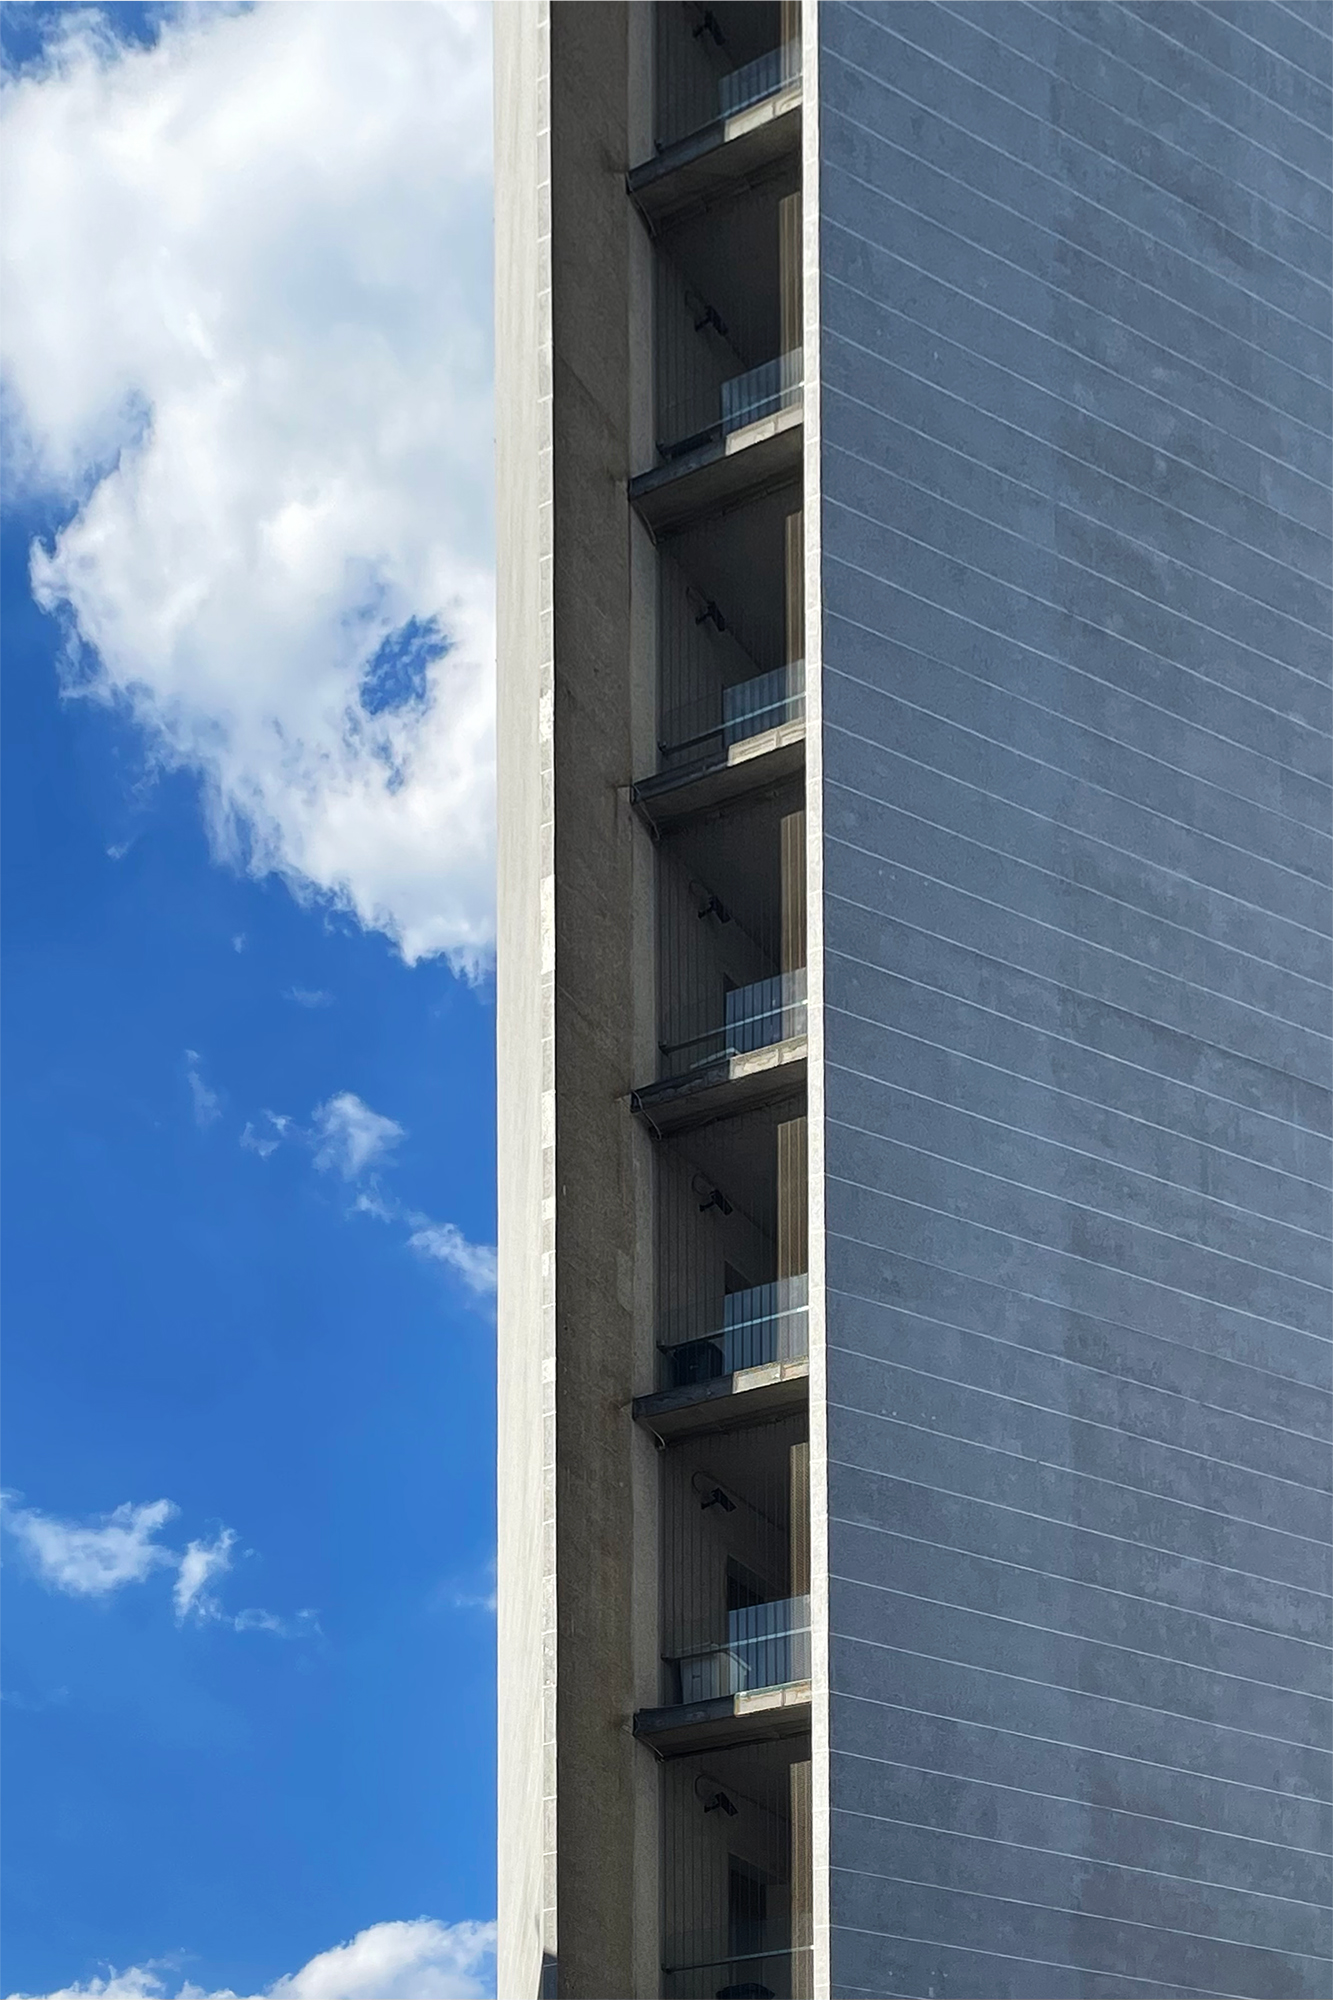 Der Torre di Pirelli entstand 1961 nach einem Entwurf von Gio Ponti und Luigi Nervi.